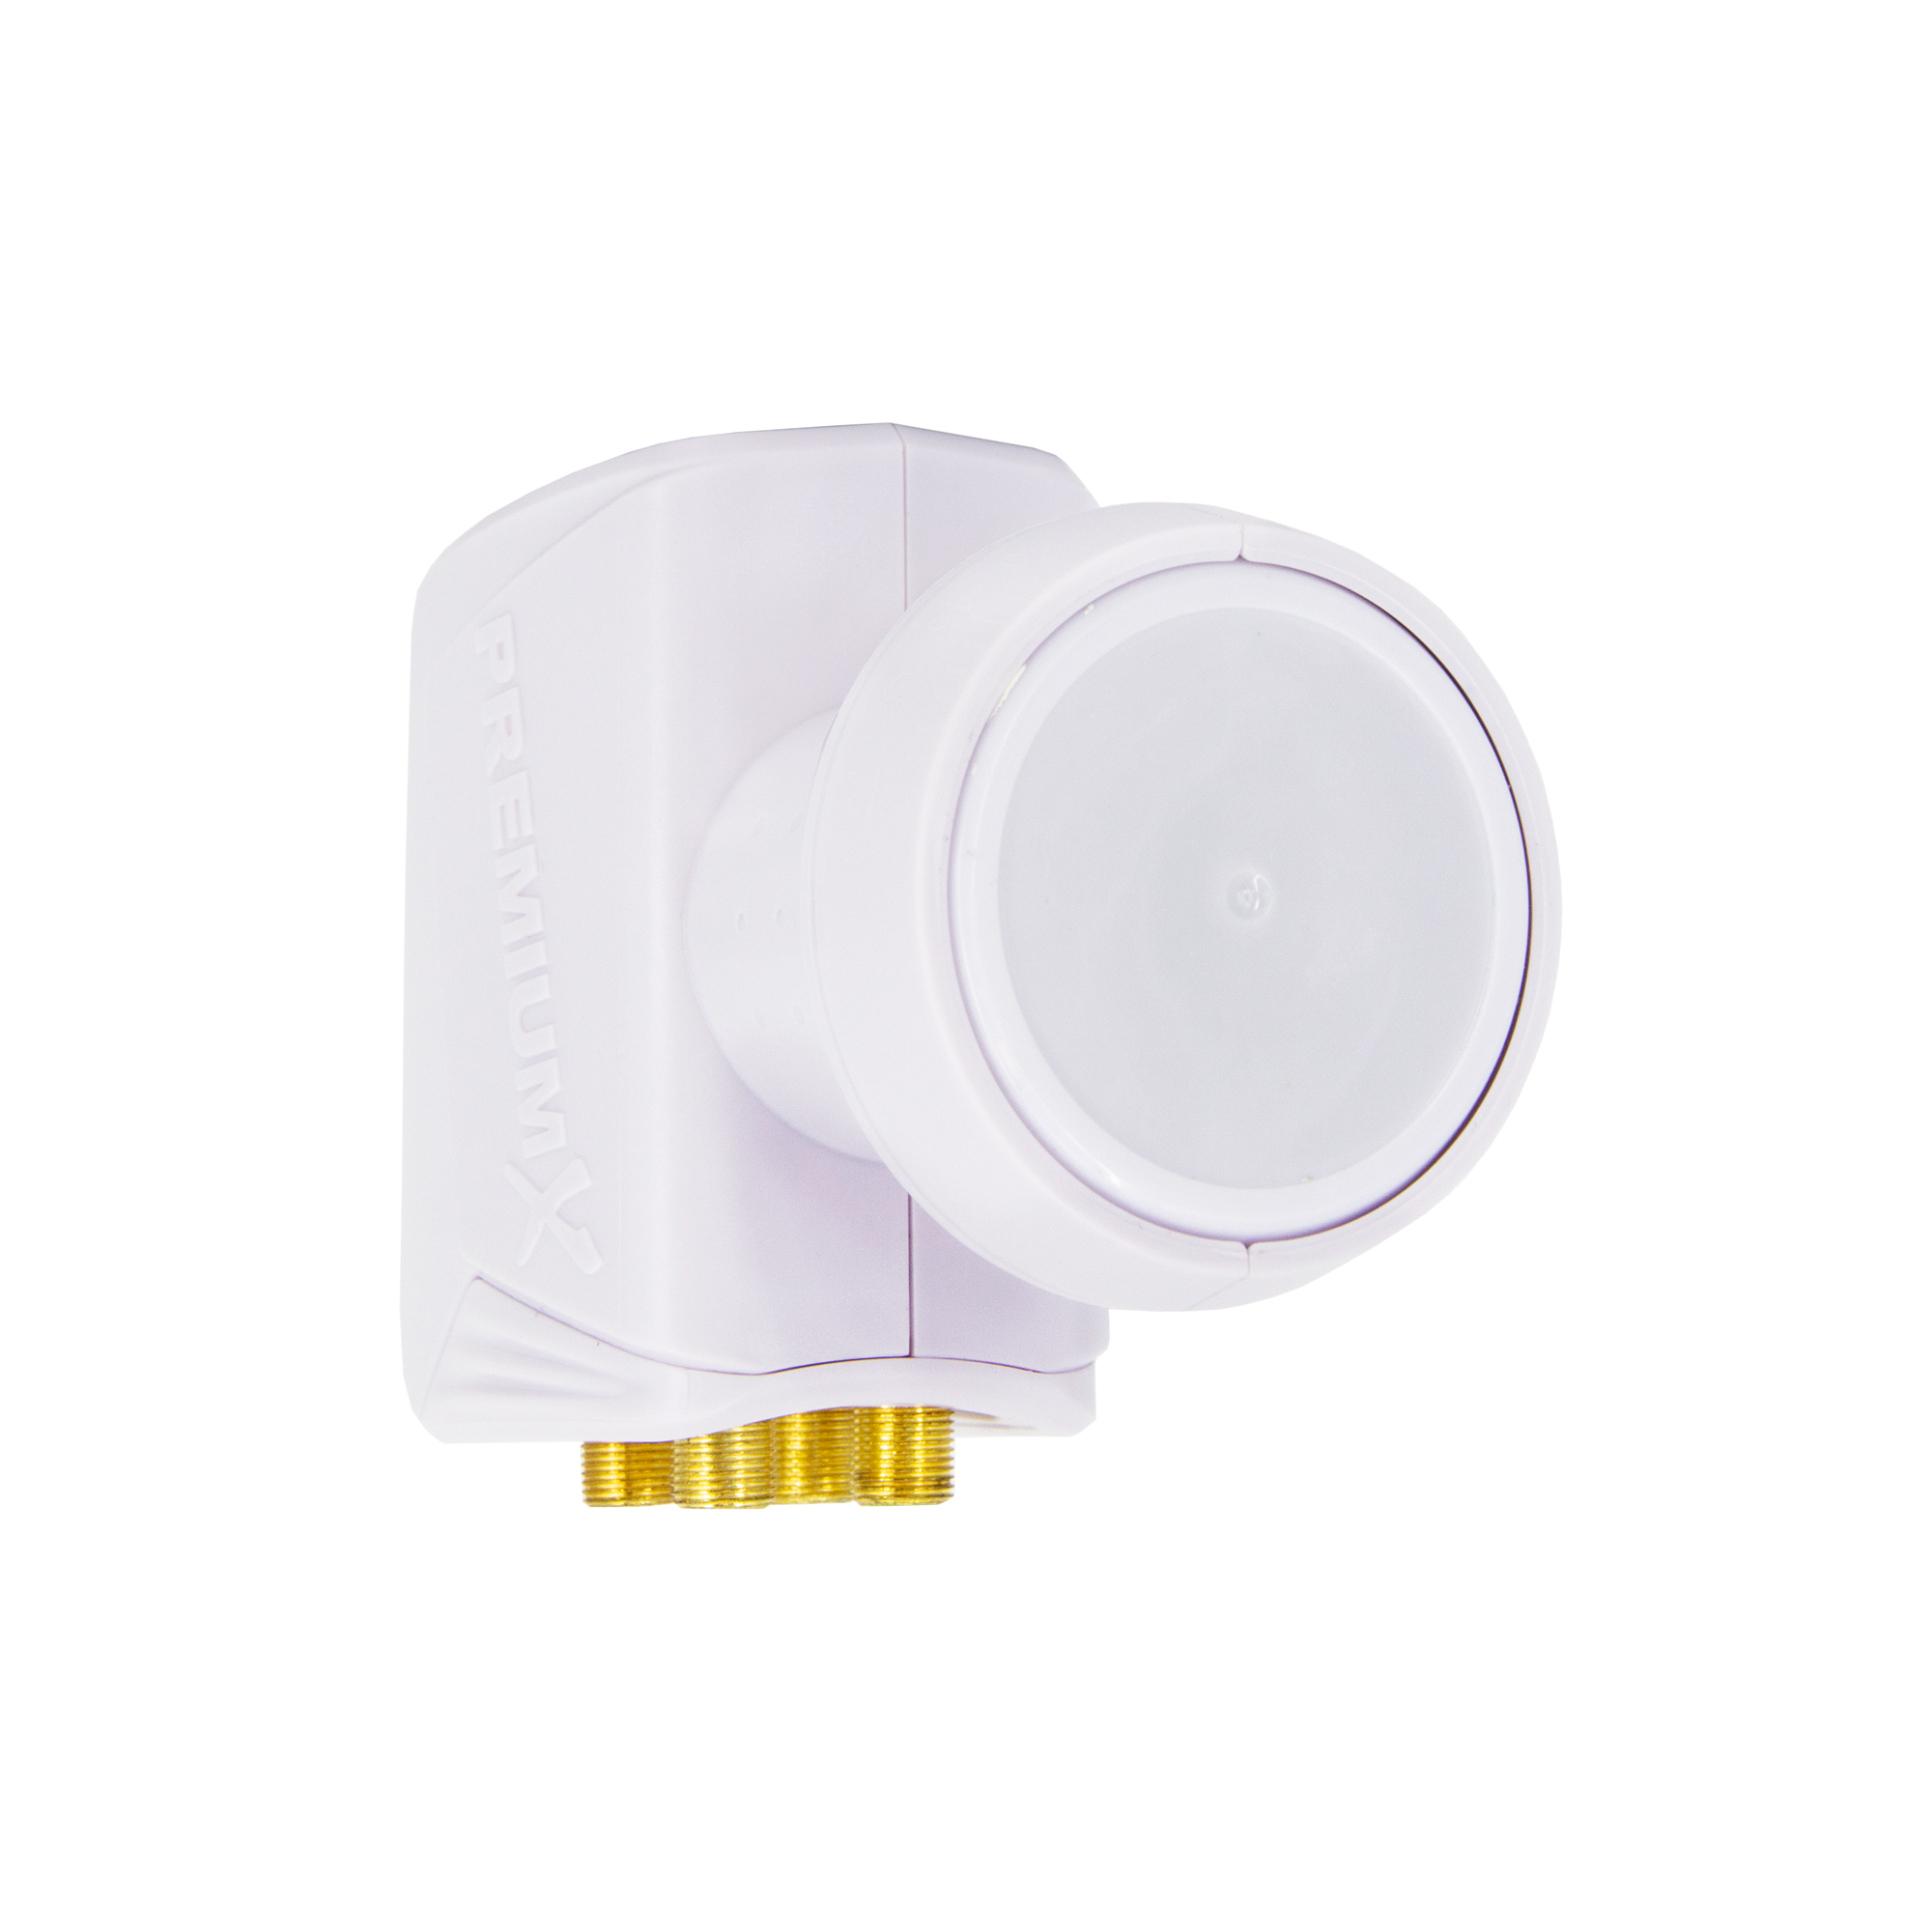 PREMIUMX LNB Quad 0,1 dB Weiß für LNB Quattro 40mm PXQS-SEW Switch Halterung Adapter Universal LNB